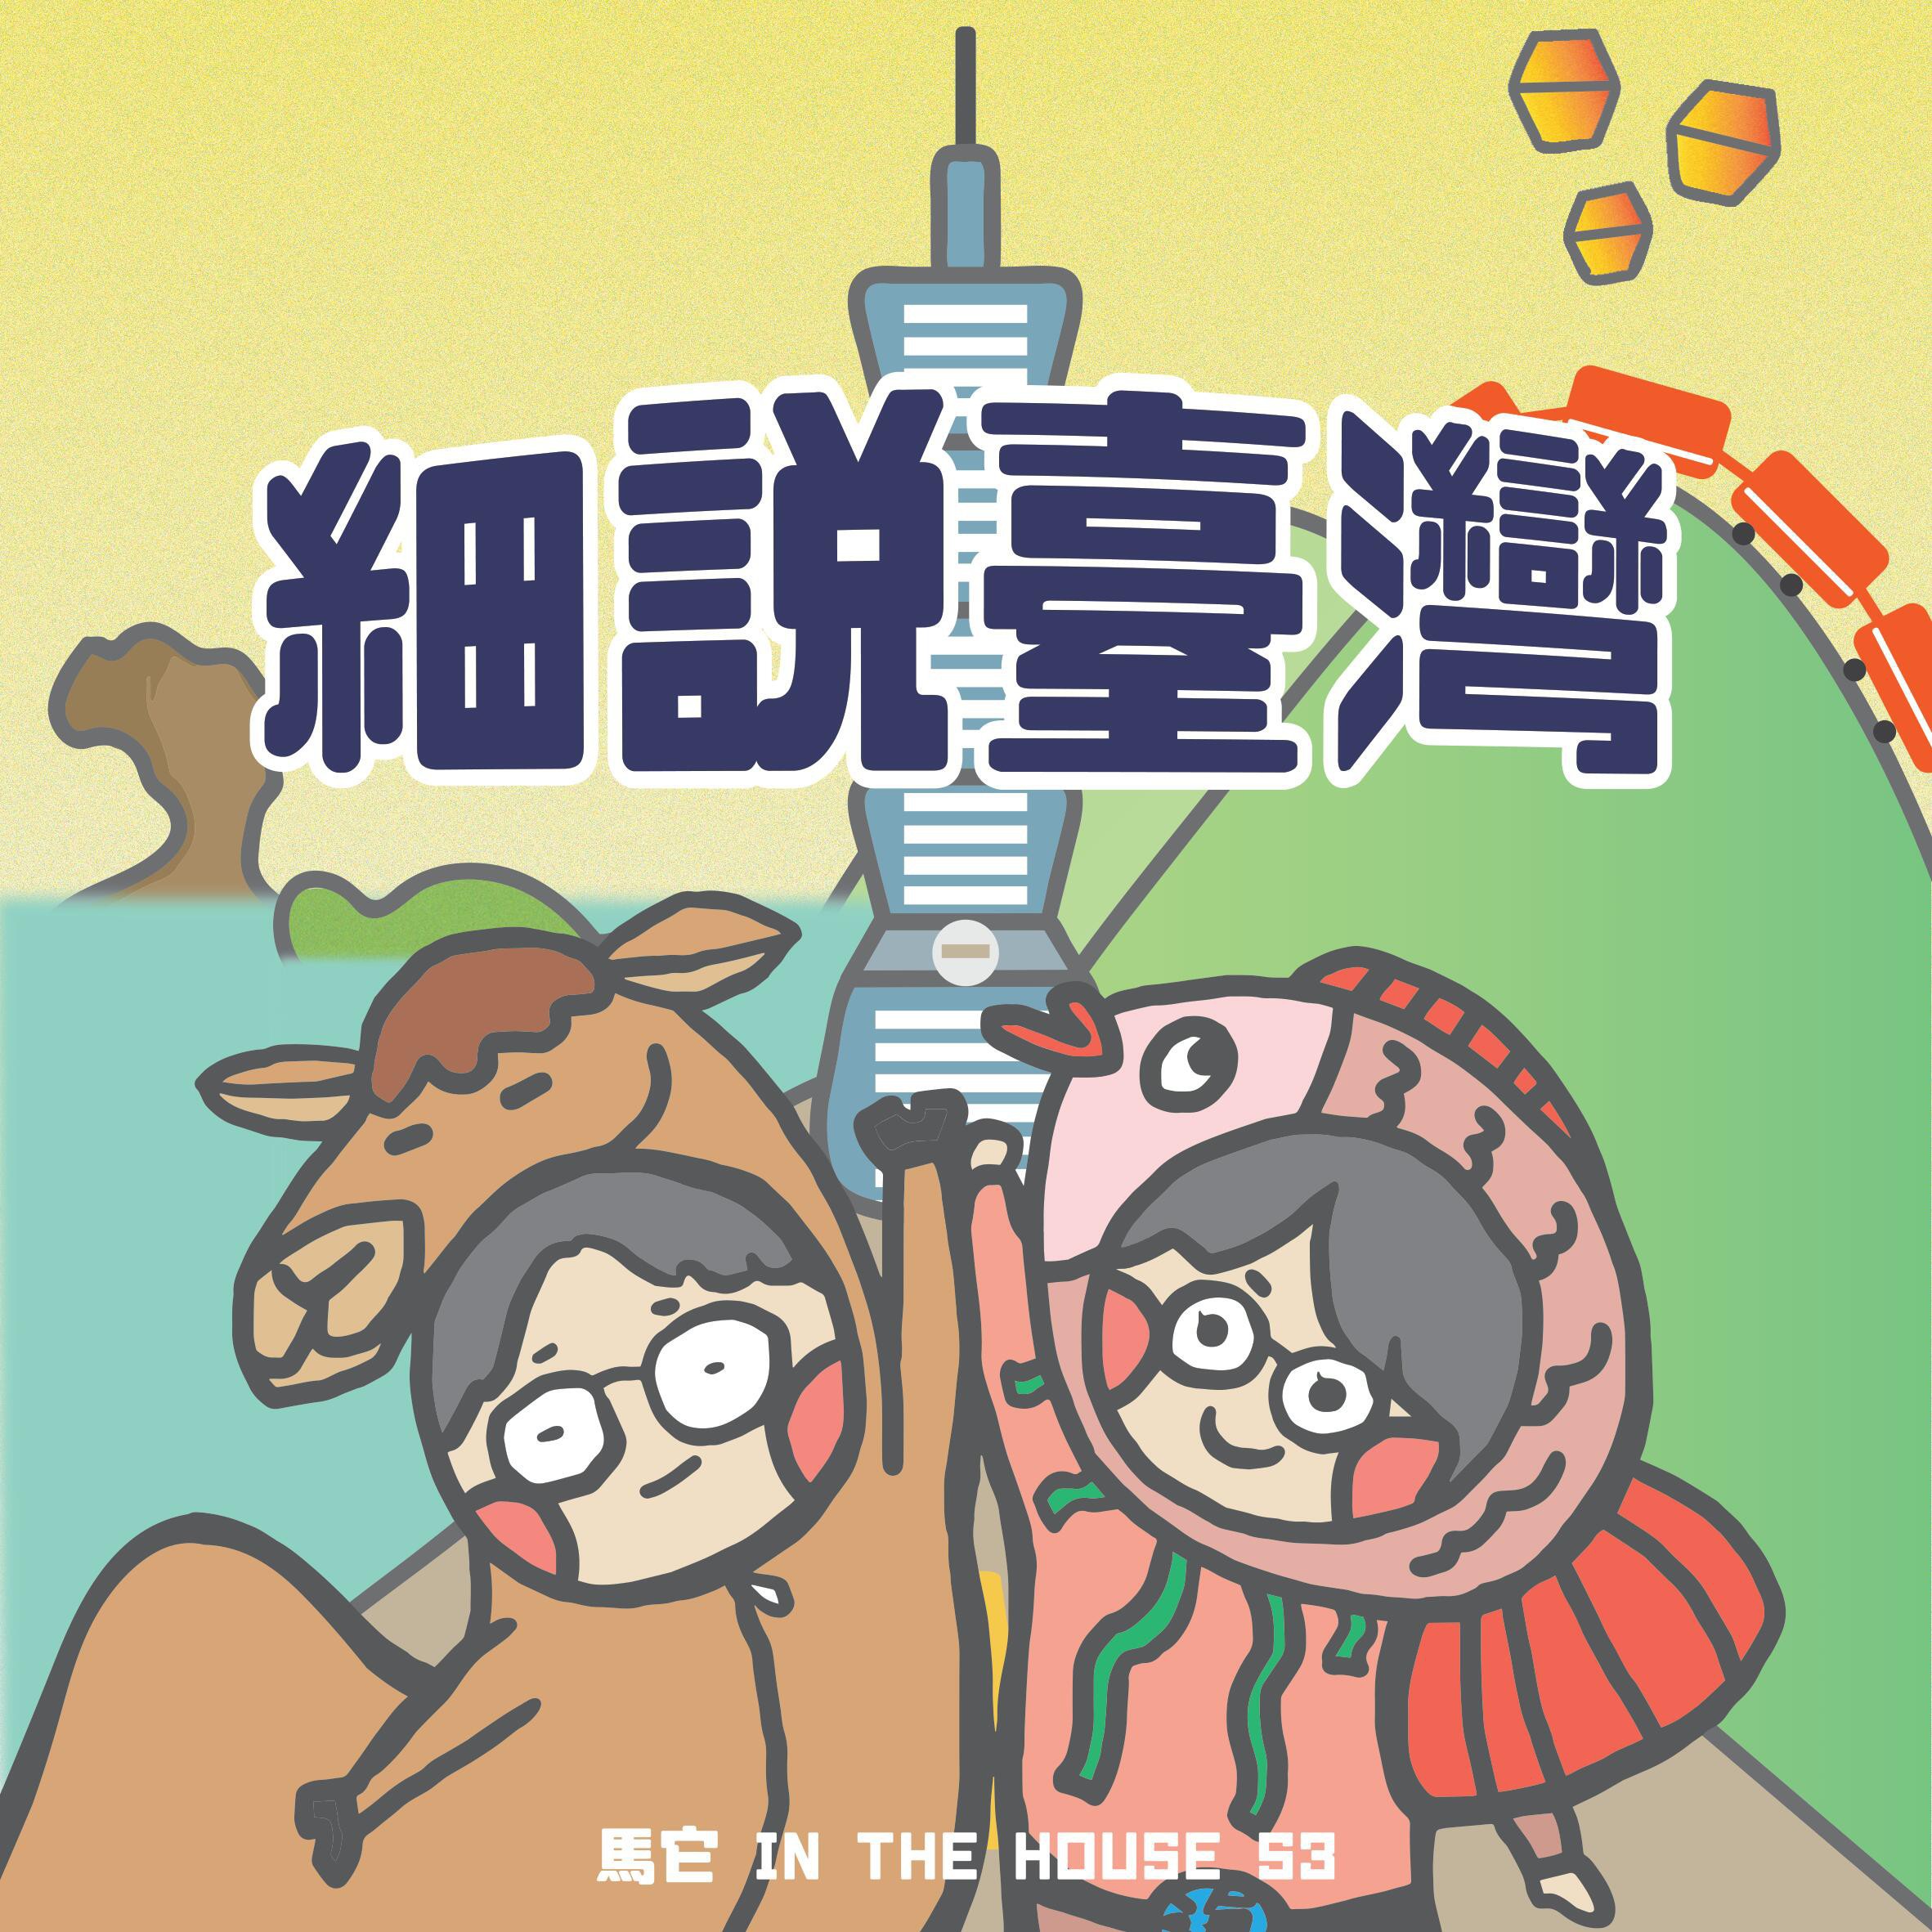 111/06/01用聲音描繪台灣故事，聽馬它和99「細說台灣」